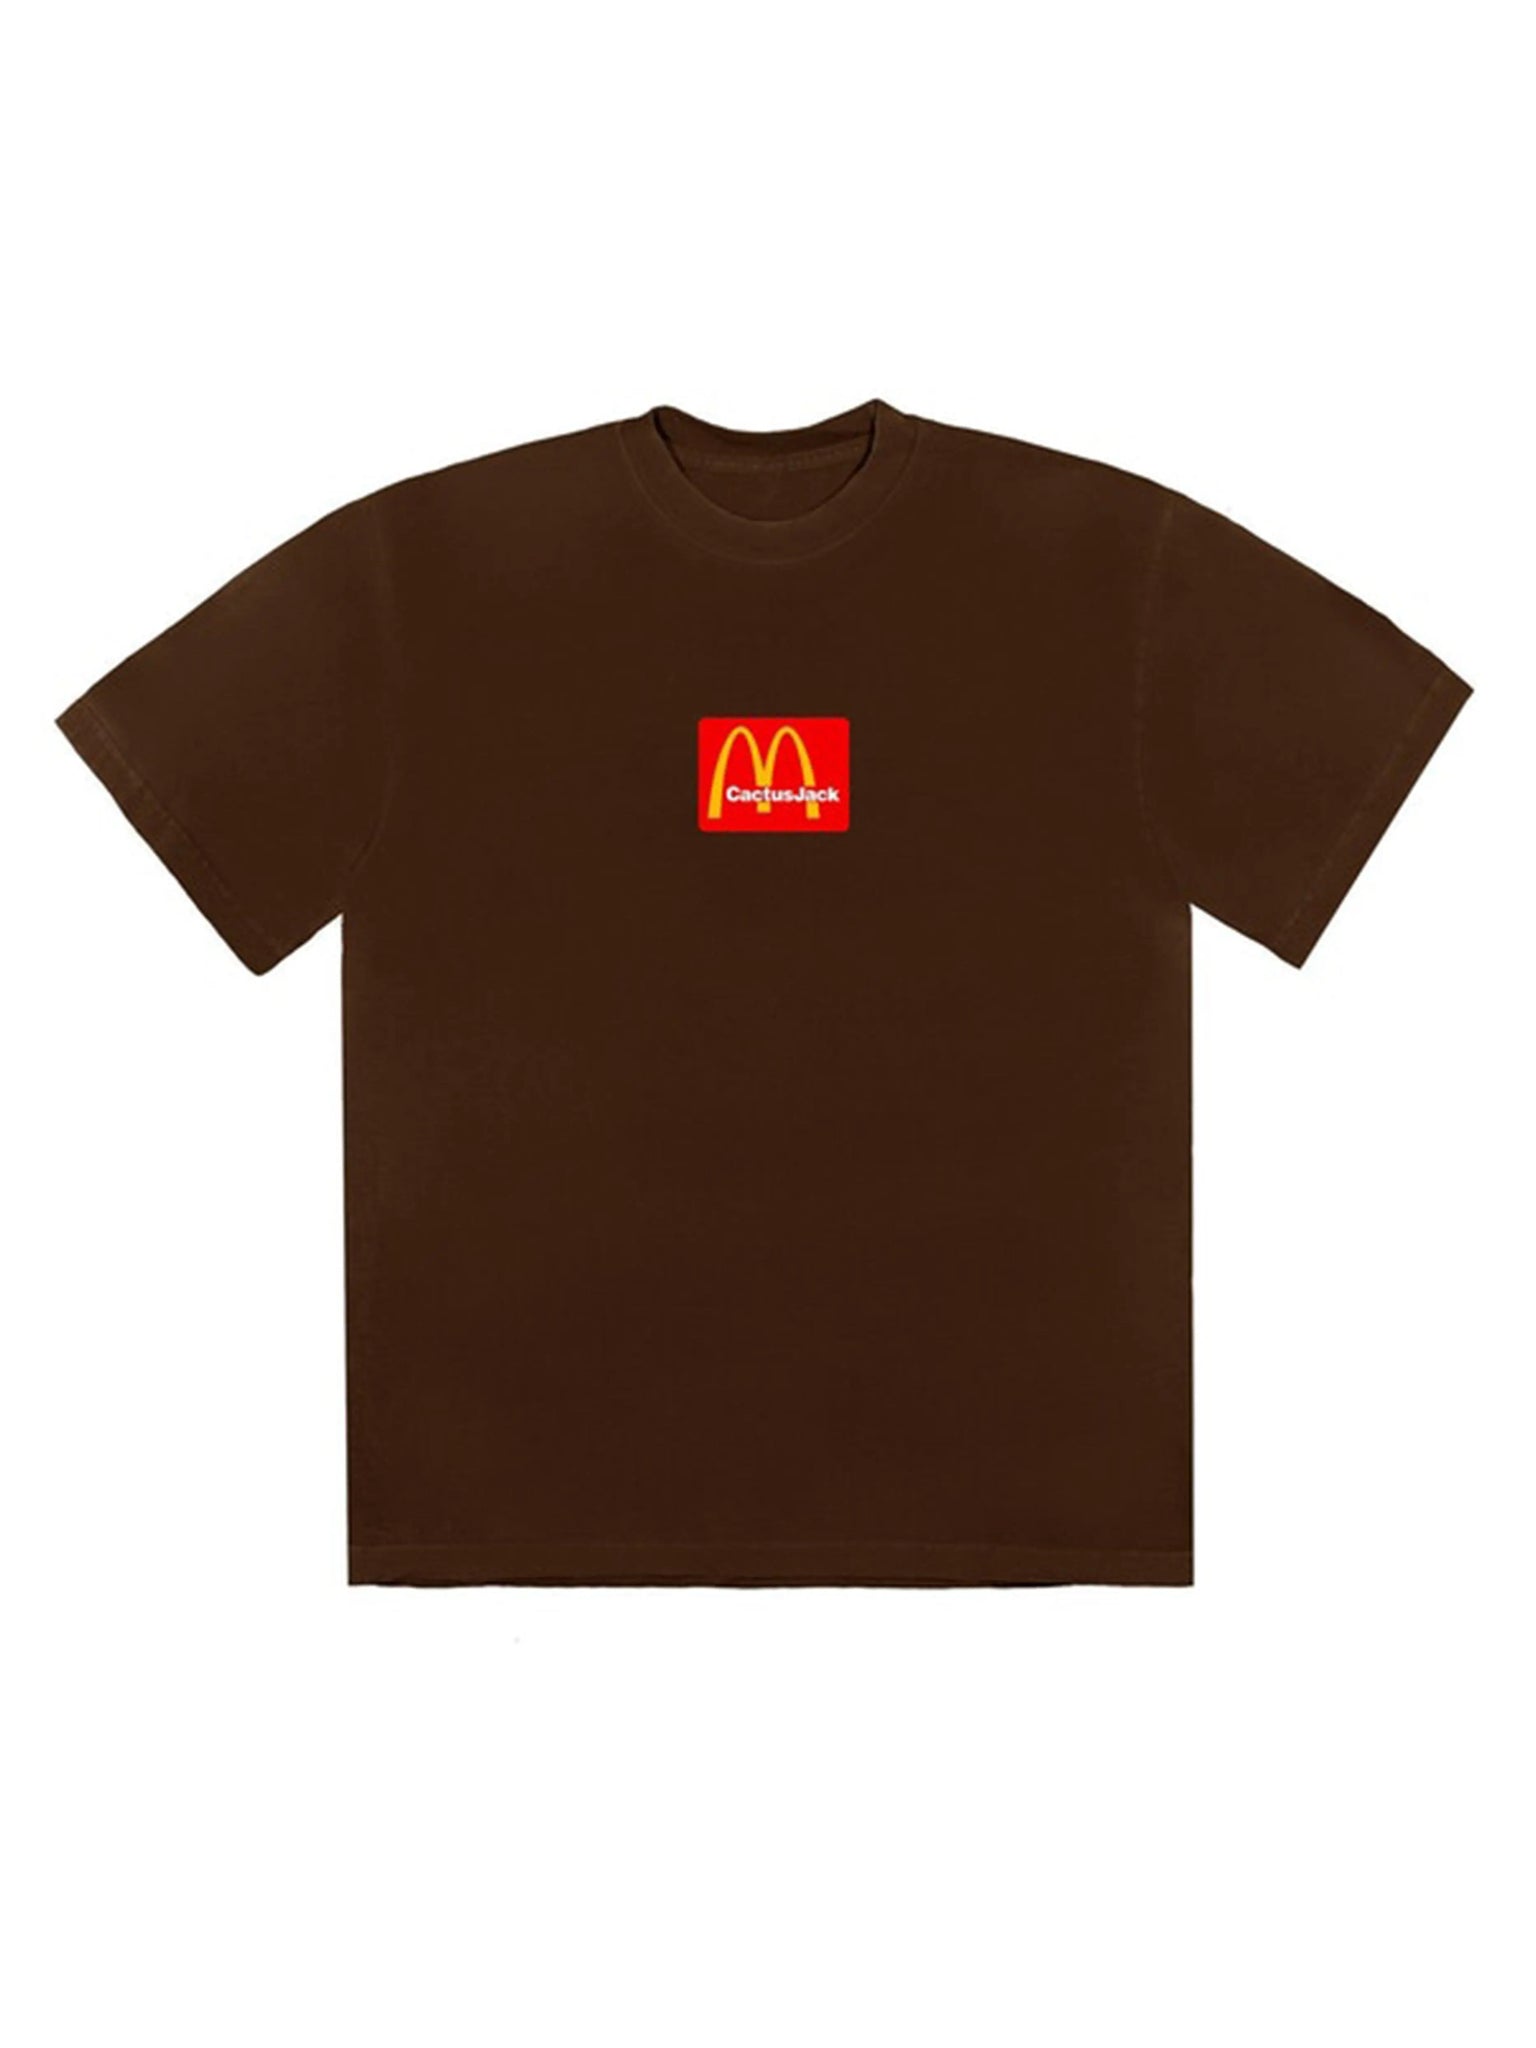 Travis Scott x McDonald's Sesame III T-Shirt Brown Travis Scott